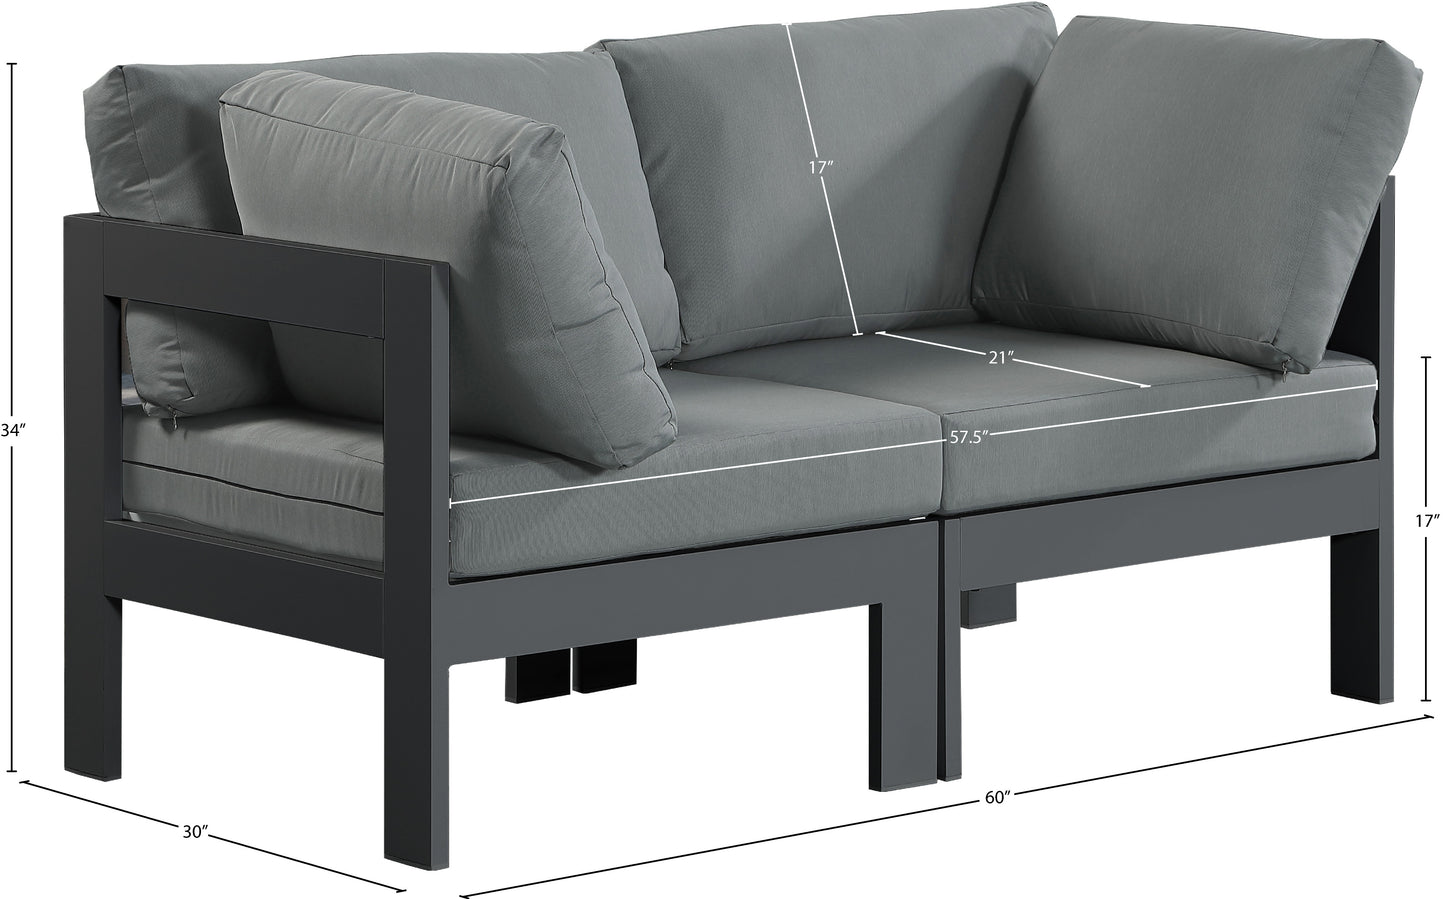 alyssa grey water resistant fabric outdoor patio modular sofa s60a